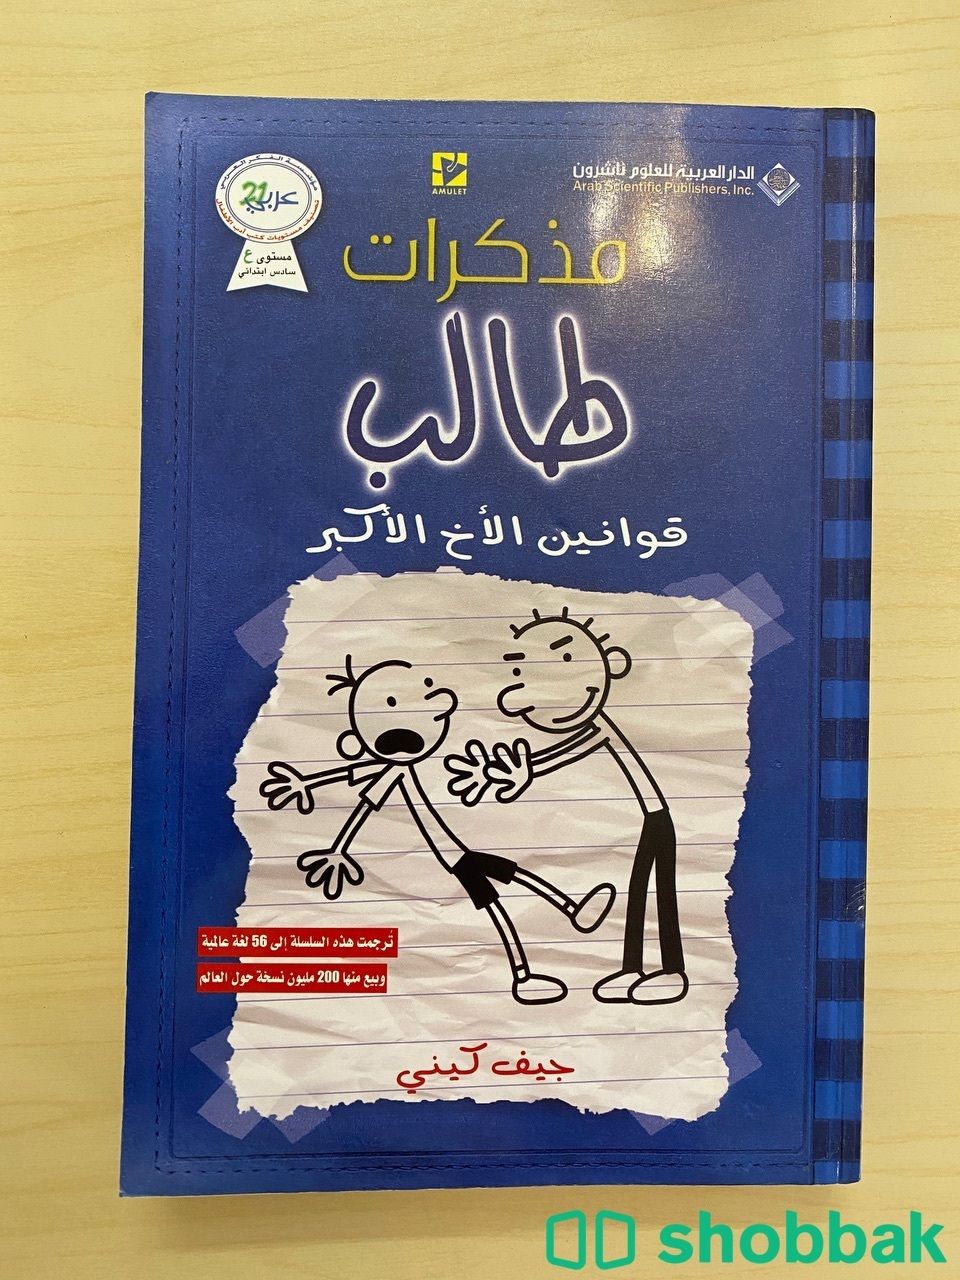 كتب مذكرات طالب بحالة جيدة جداً Shobbak Saudi Arabia